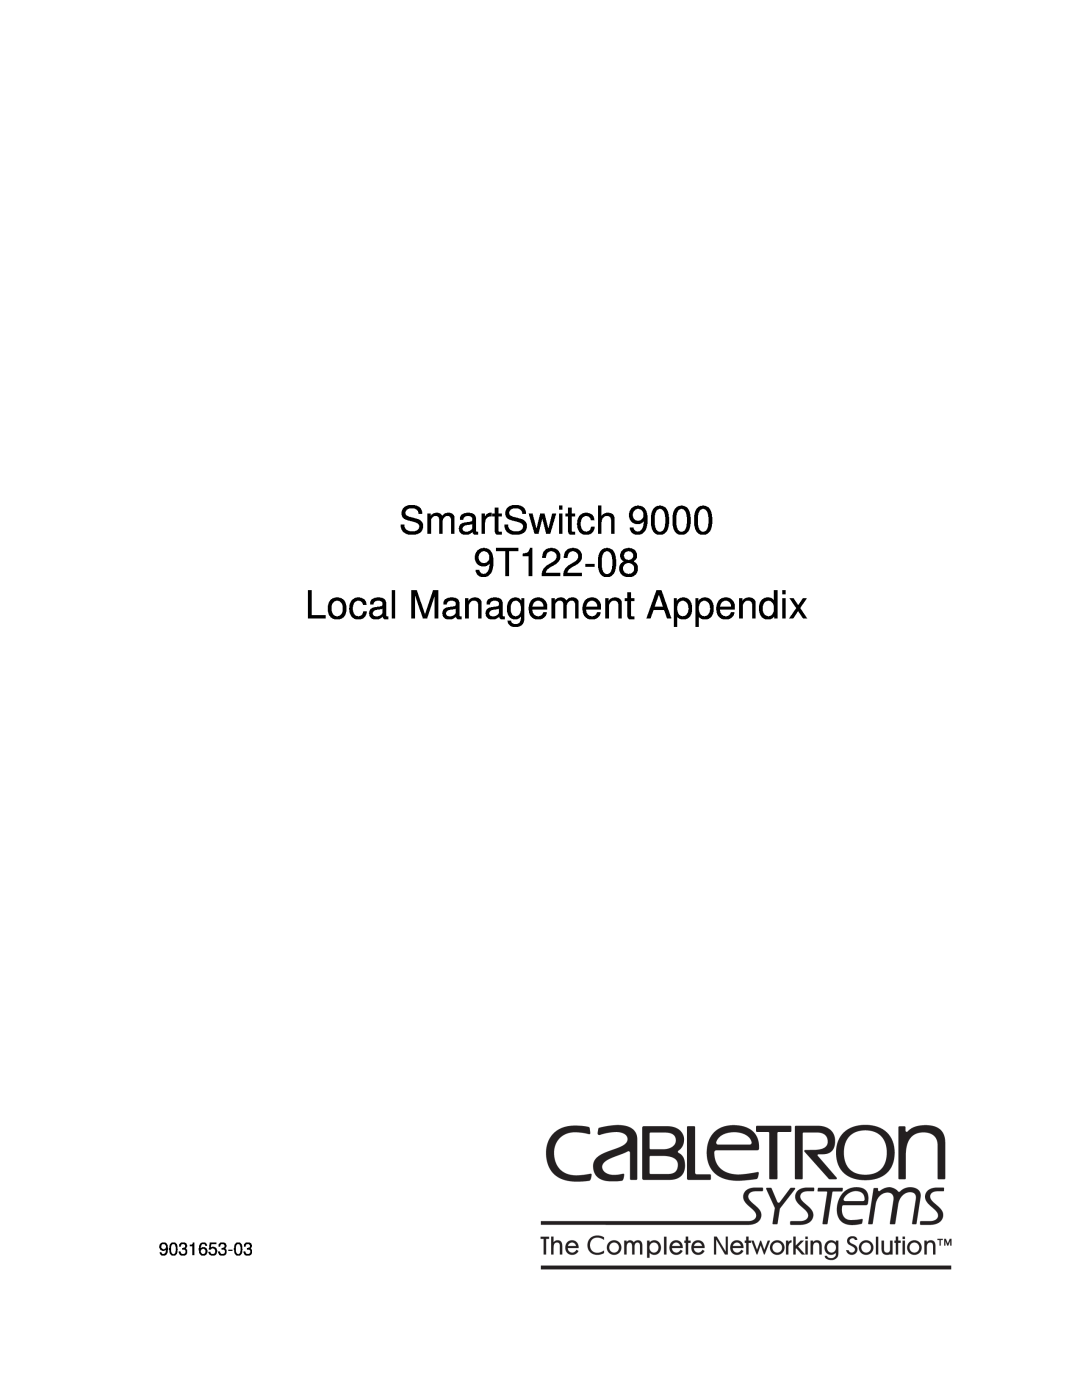 Cabletron Systems appendix SmartSwitch 9T122-08 Local Management Appendix 